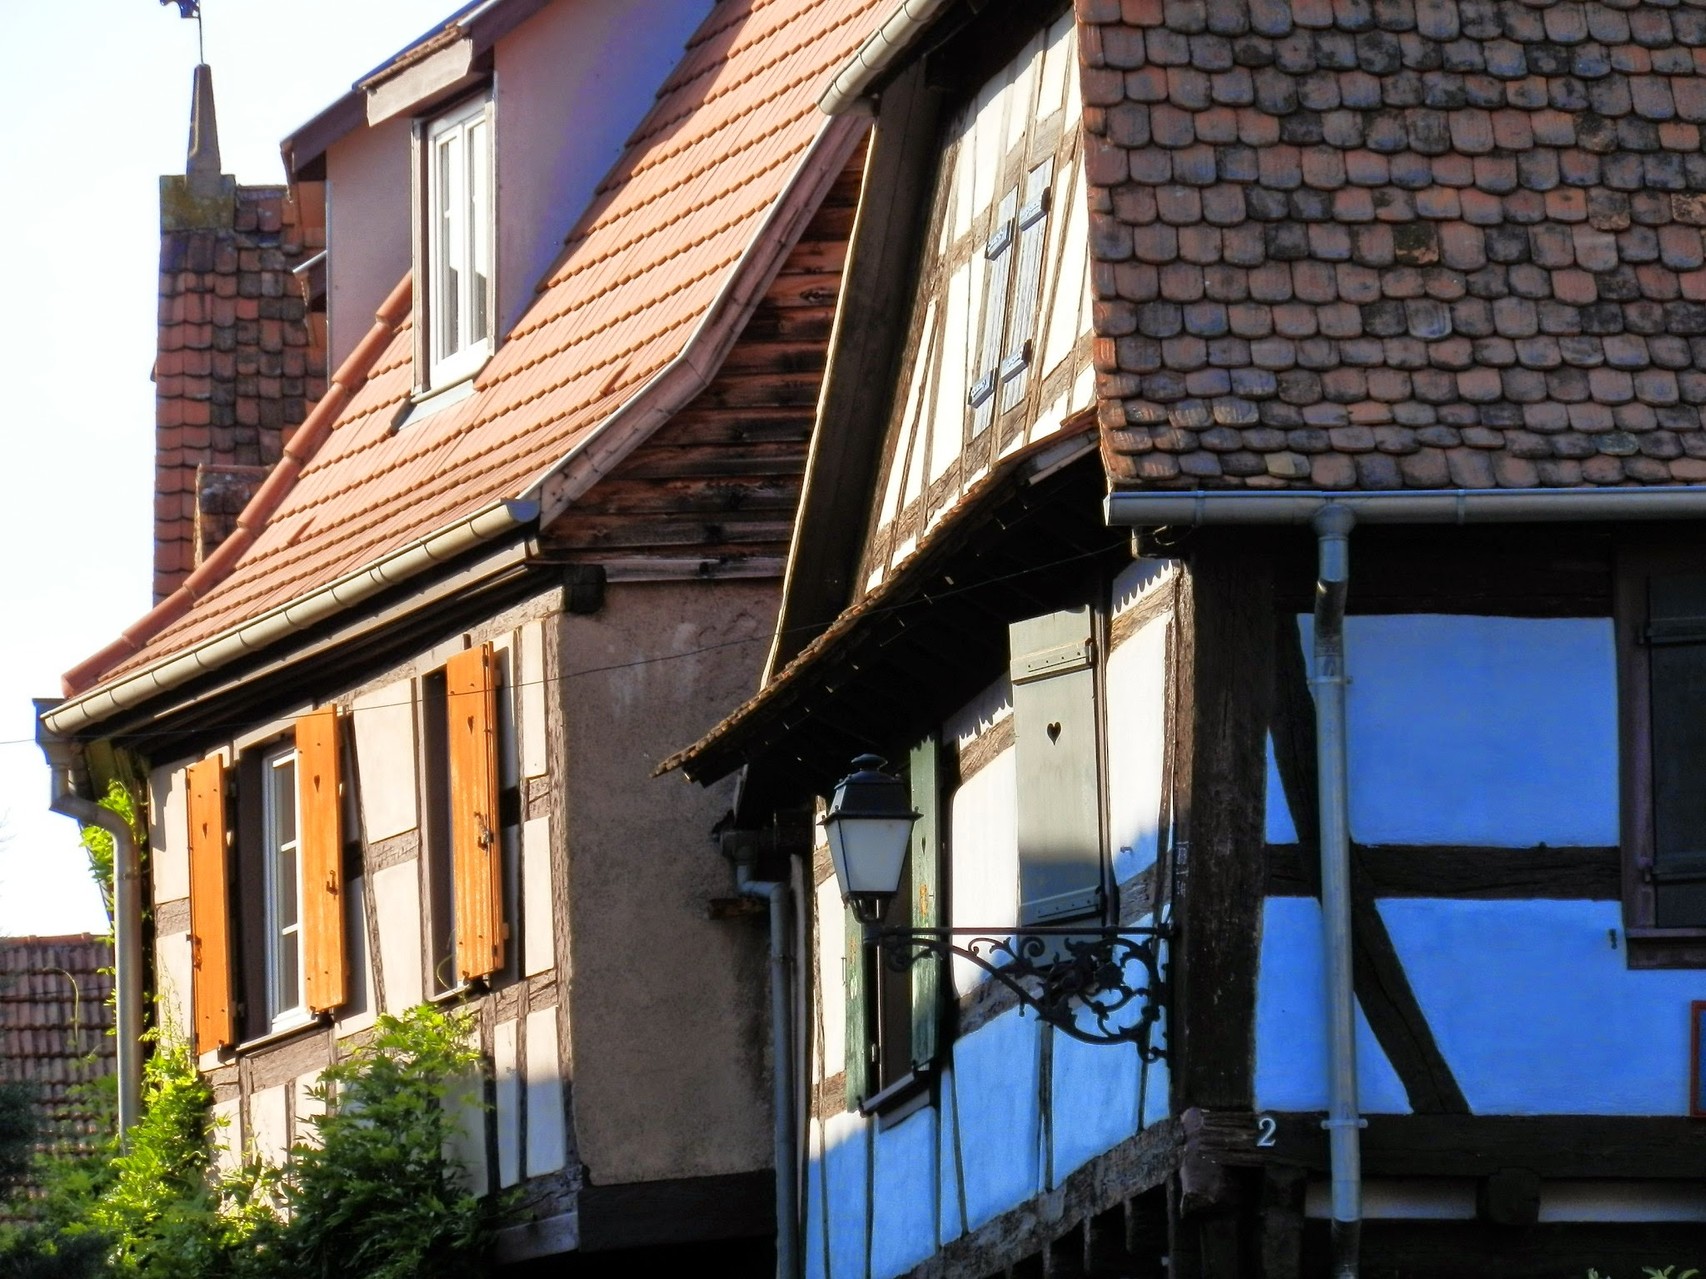 Maisons à colombages et ruelles ombragées de Rosheim - Gite du Leimen en Alsace